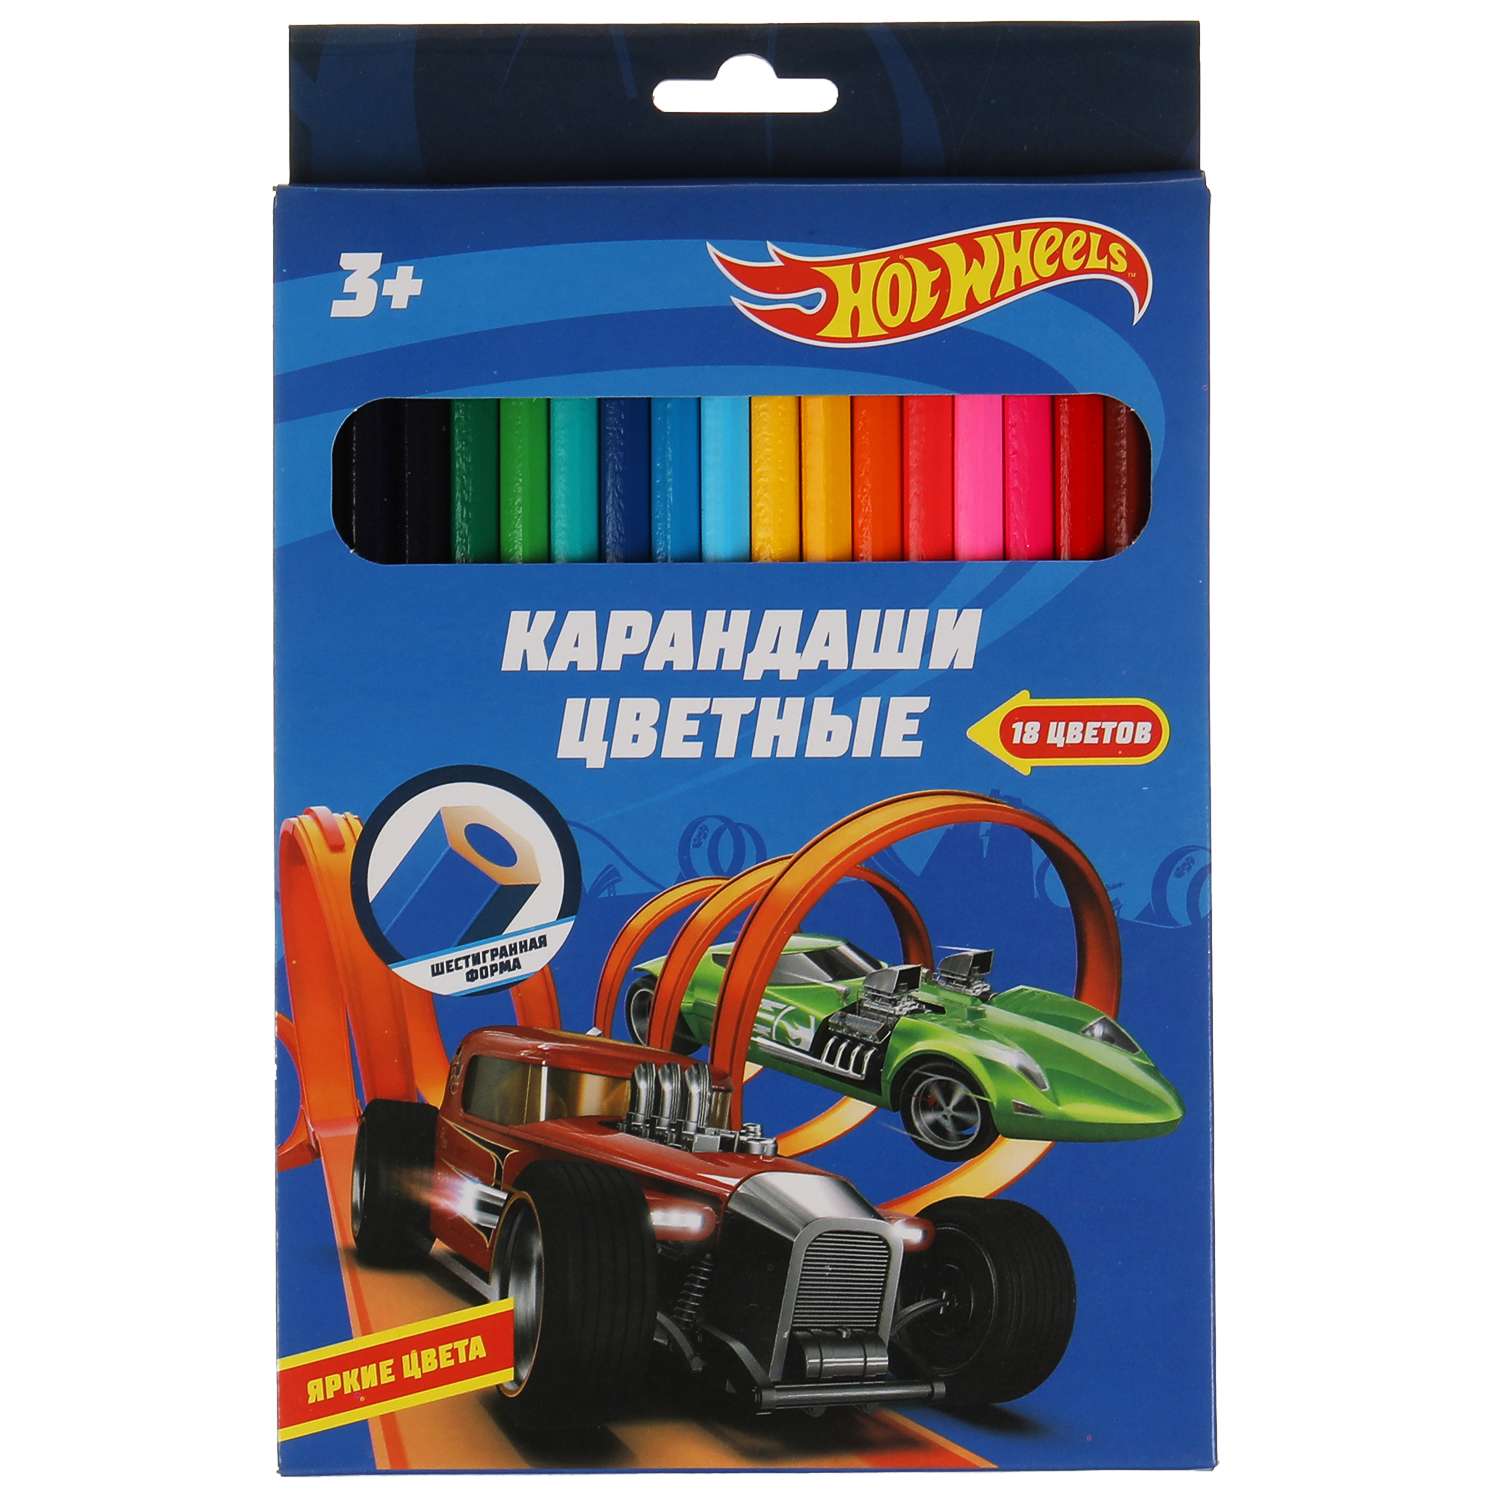 Цветные карандаши Умка Hot Wheels 18 цветов шестигранные 313752 - фото 1